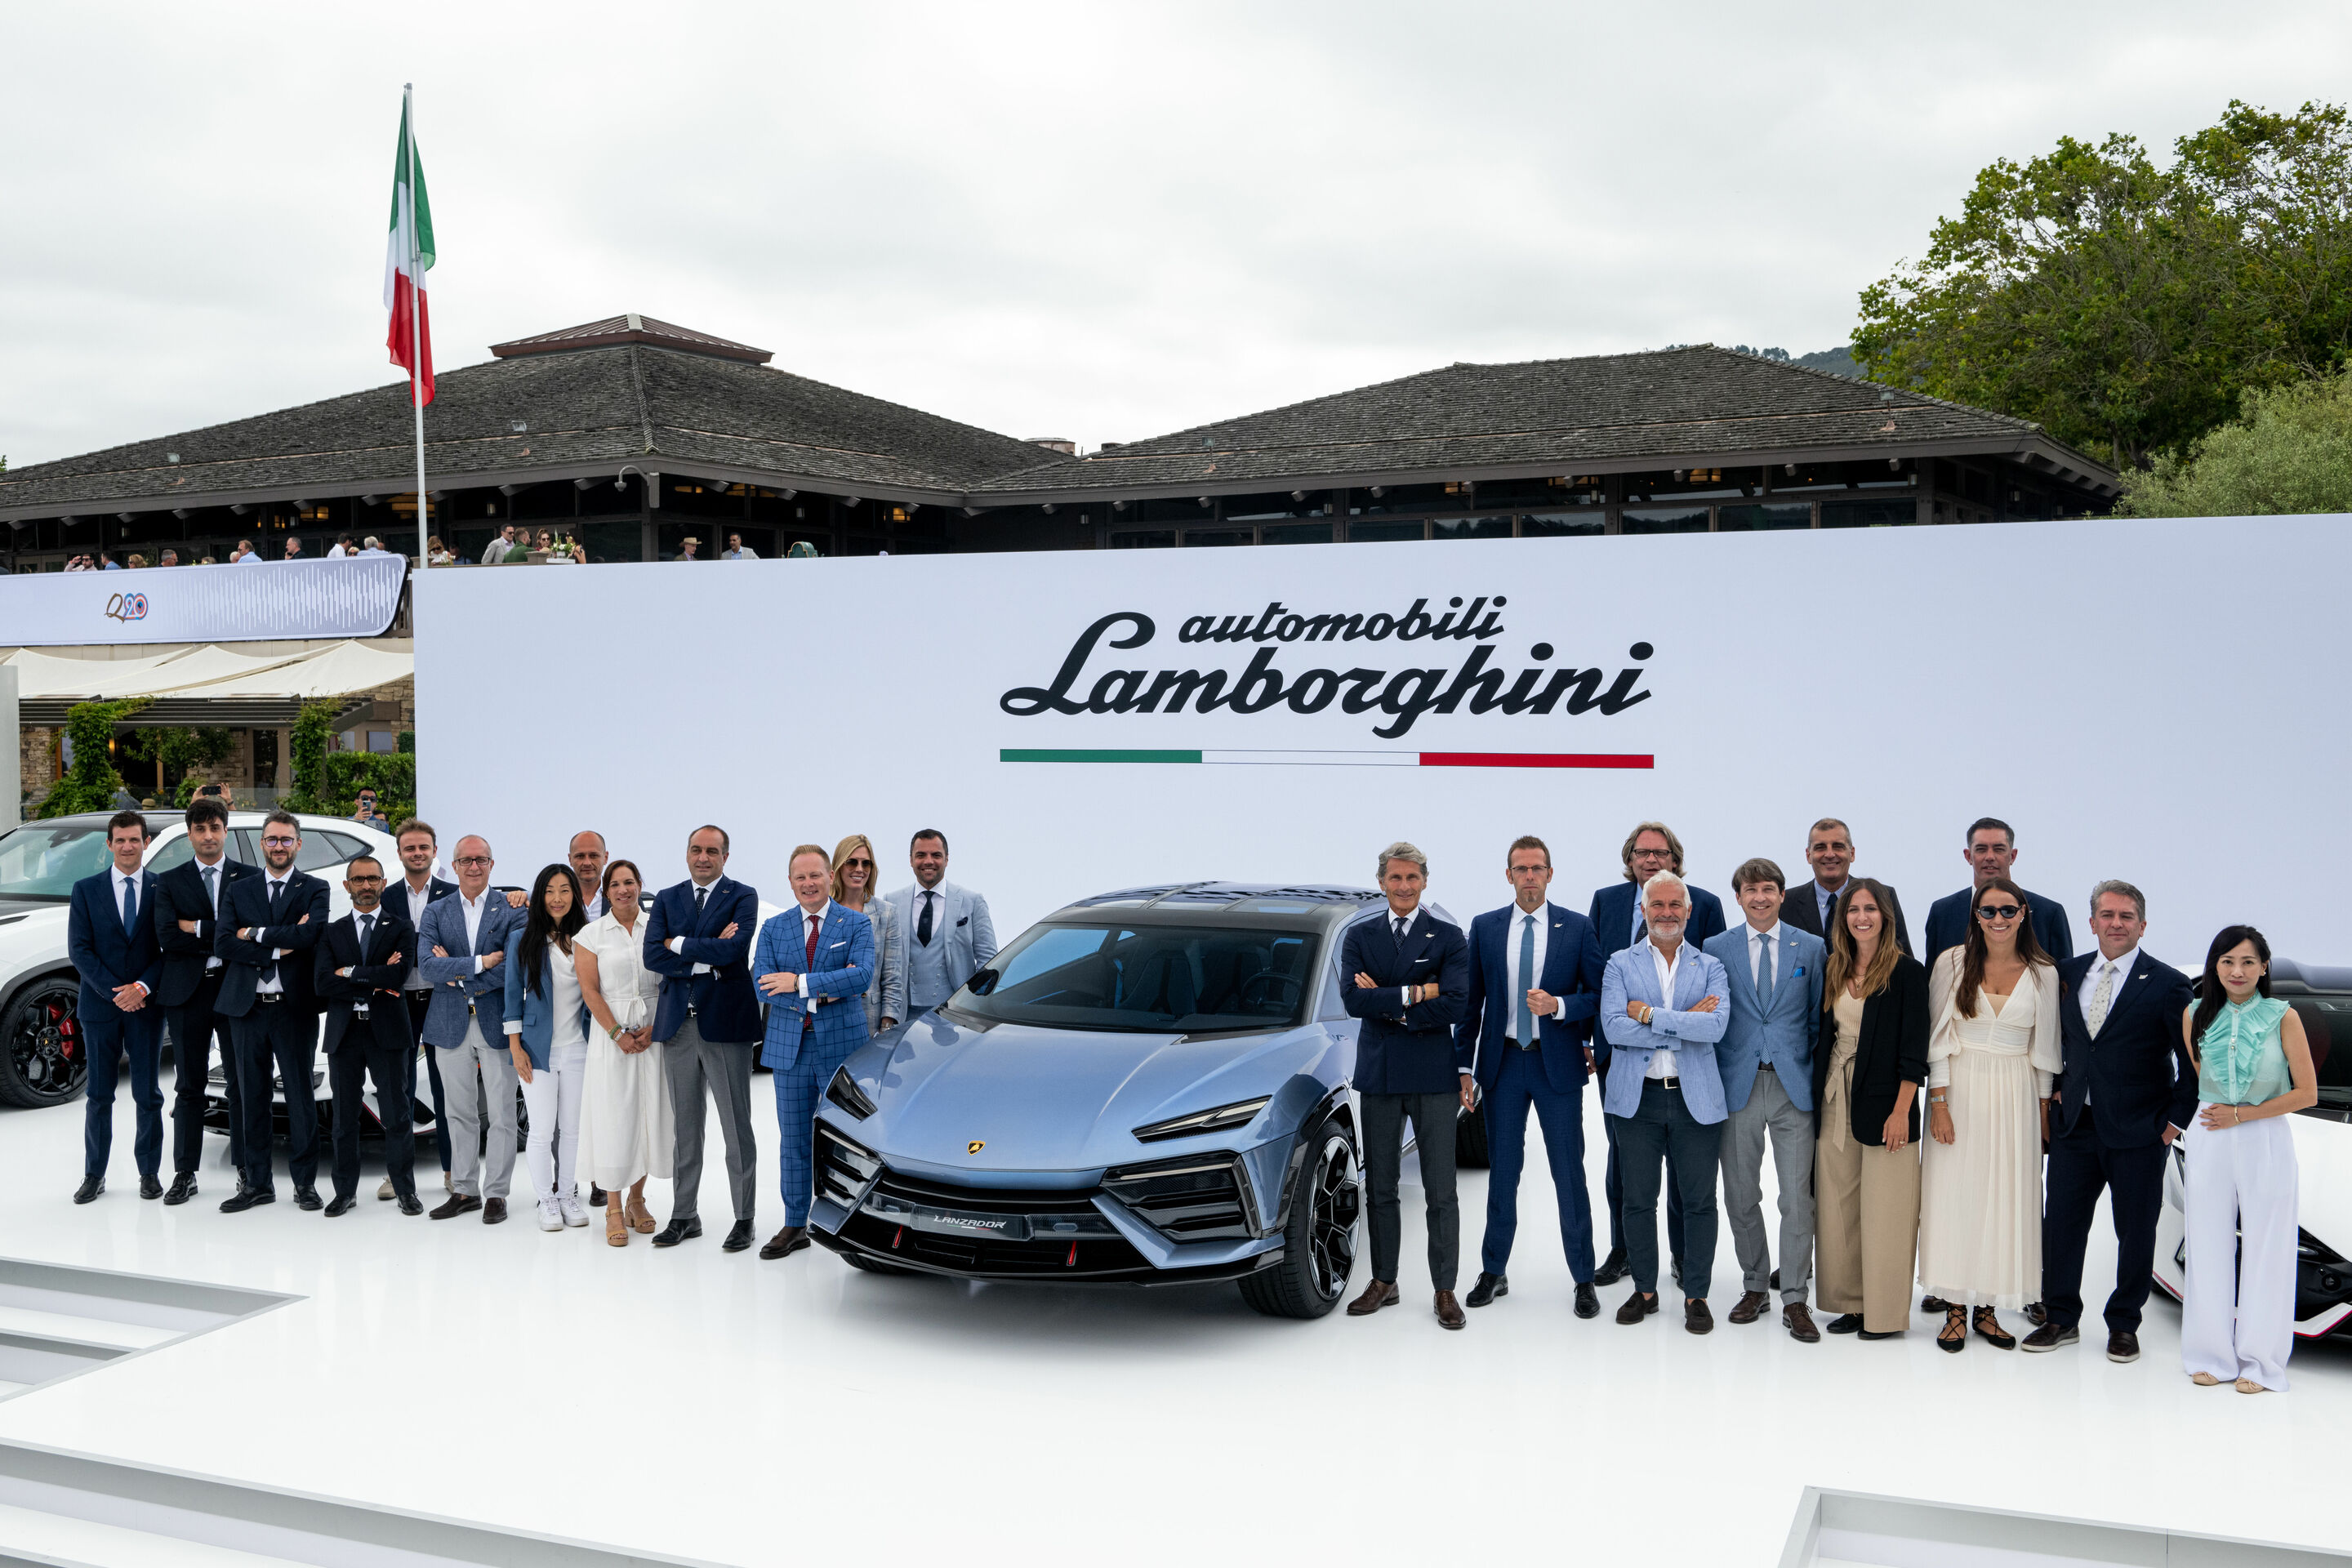 Automobili Lamborghini reaches a historic milestone